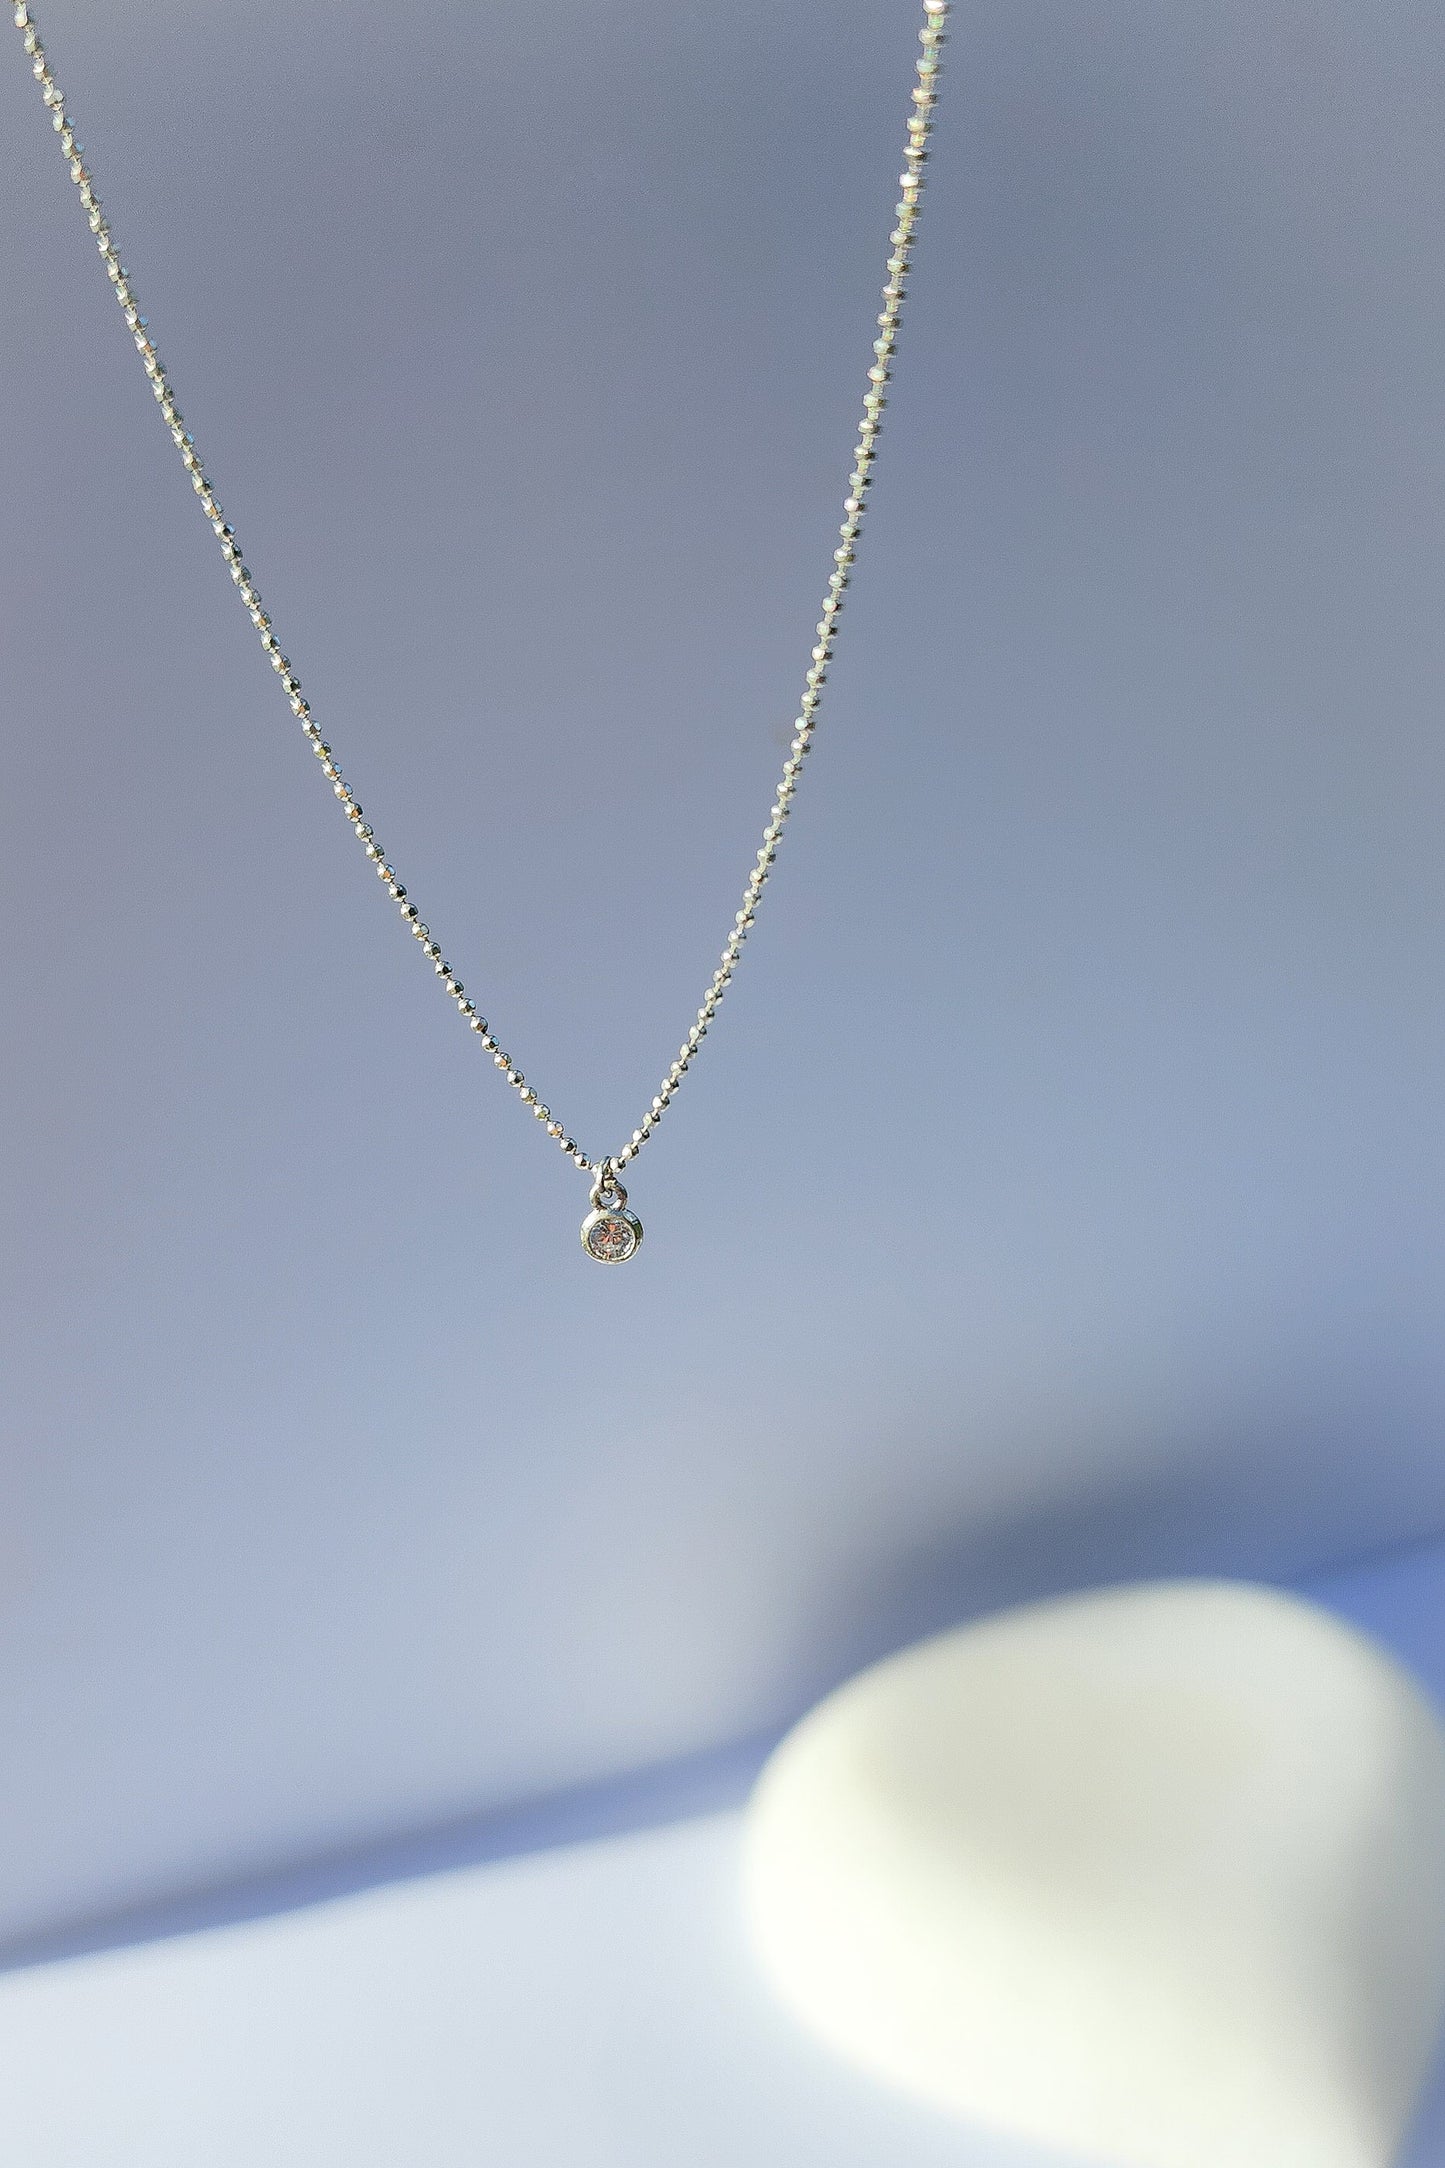 Thira Silver Necklace 18" : Santorini Colección